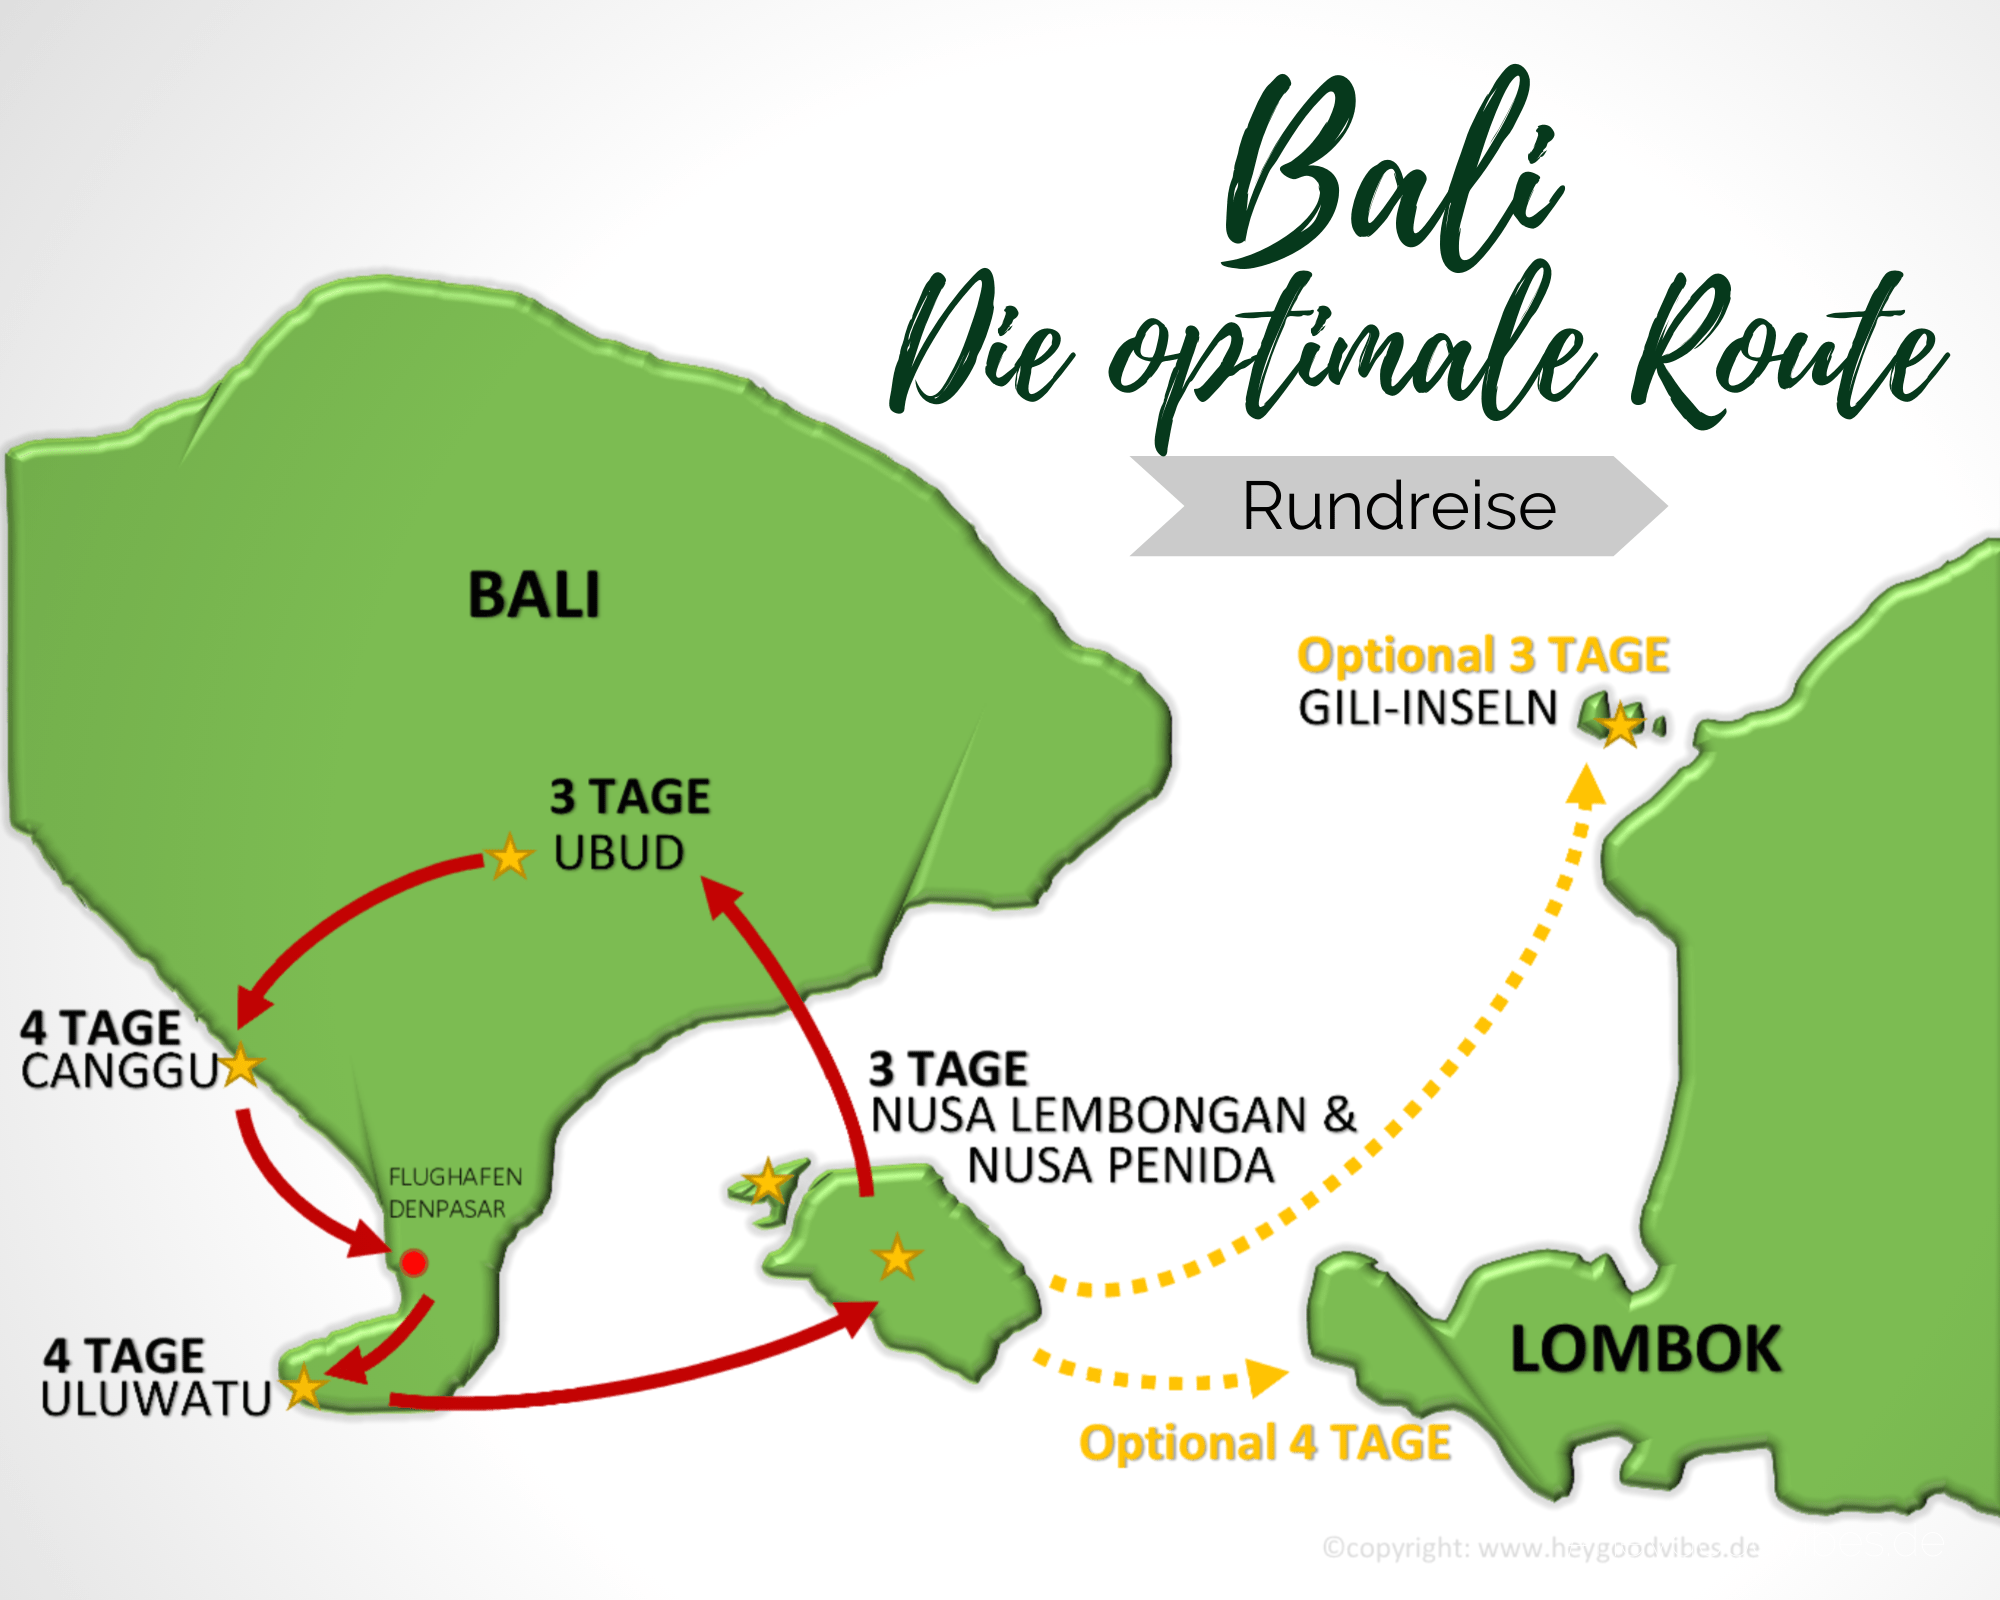 BALI- die optimale Route für deine Rundreise